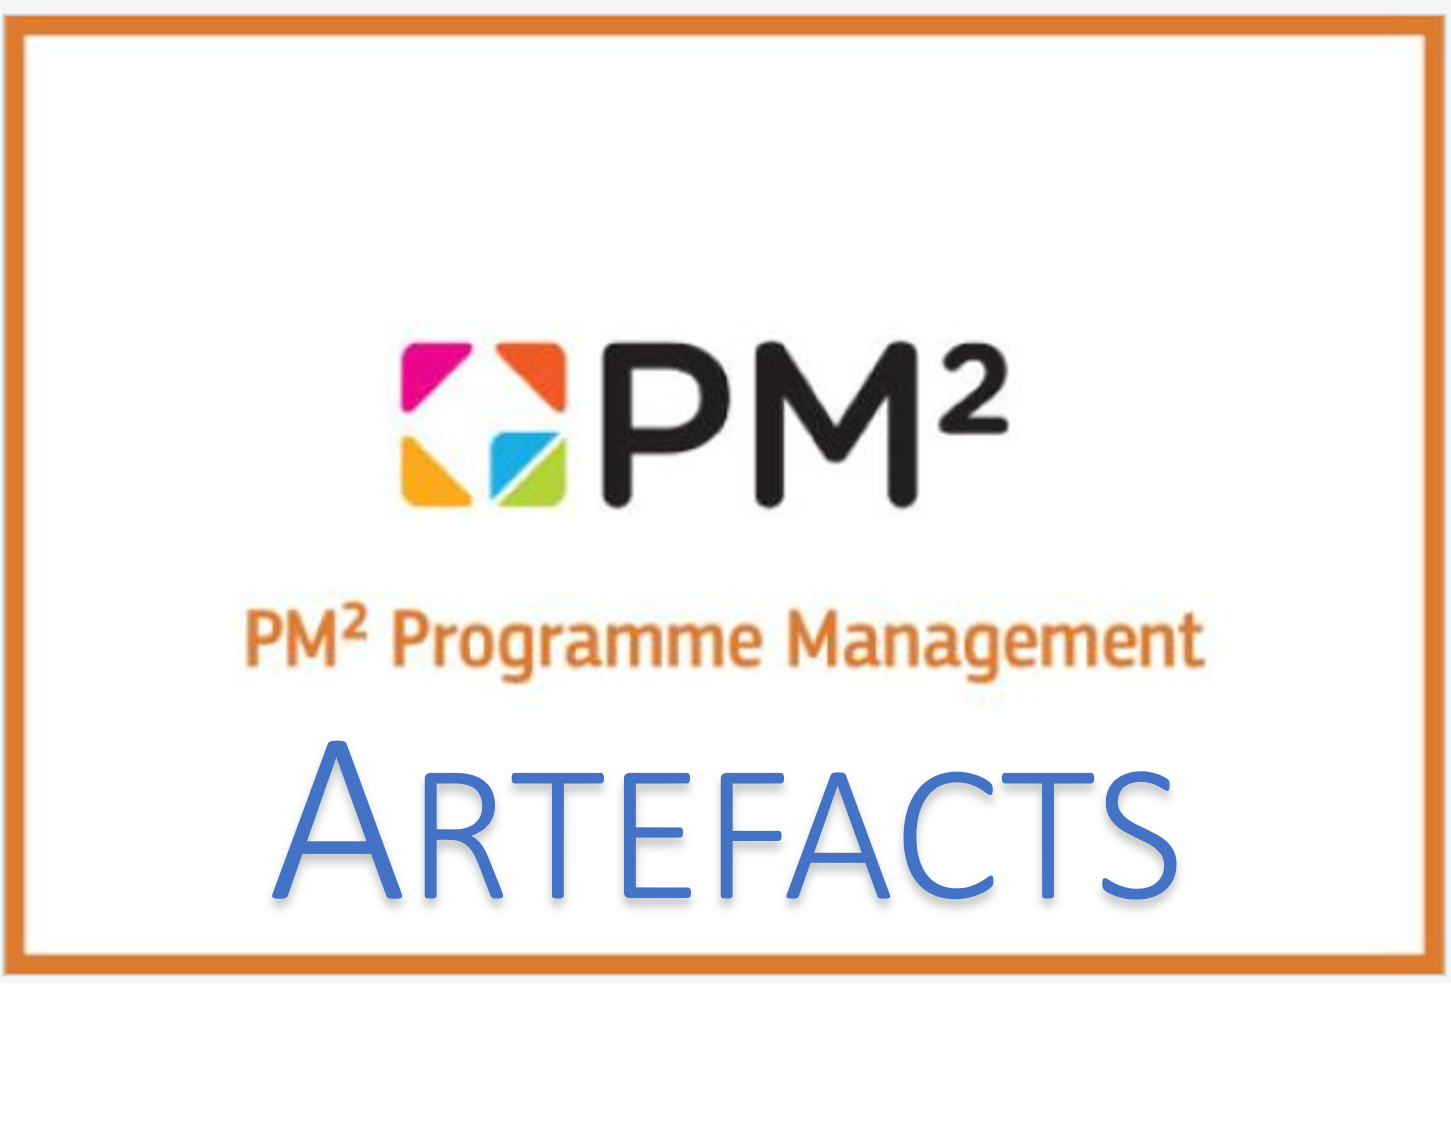 PM2 - PgM Artefacts